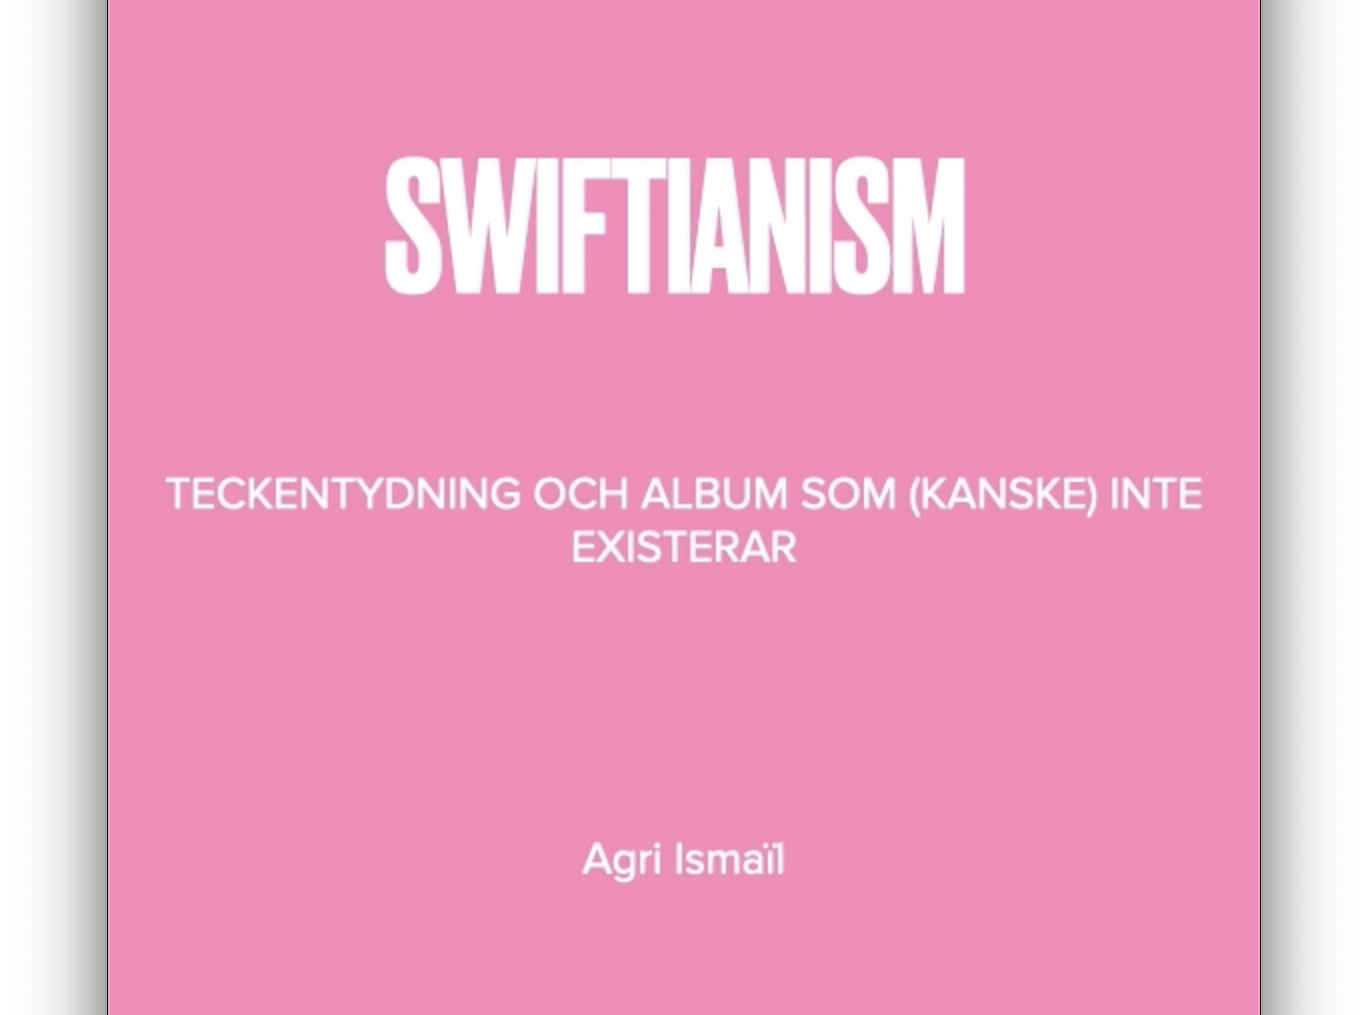 ”Swiftianism” – en videoessä av Agri Ismaïl om koder, gåtor och hemligheter i Taylor Swifts låtar och musikvideor.
